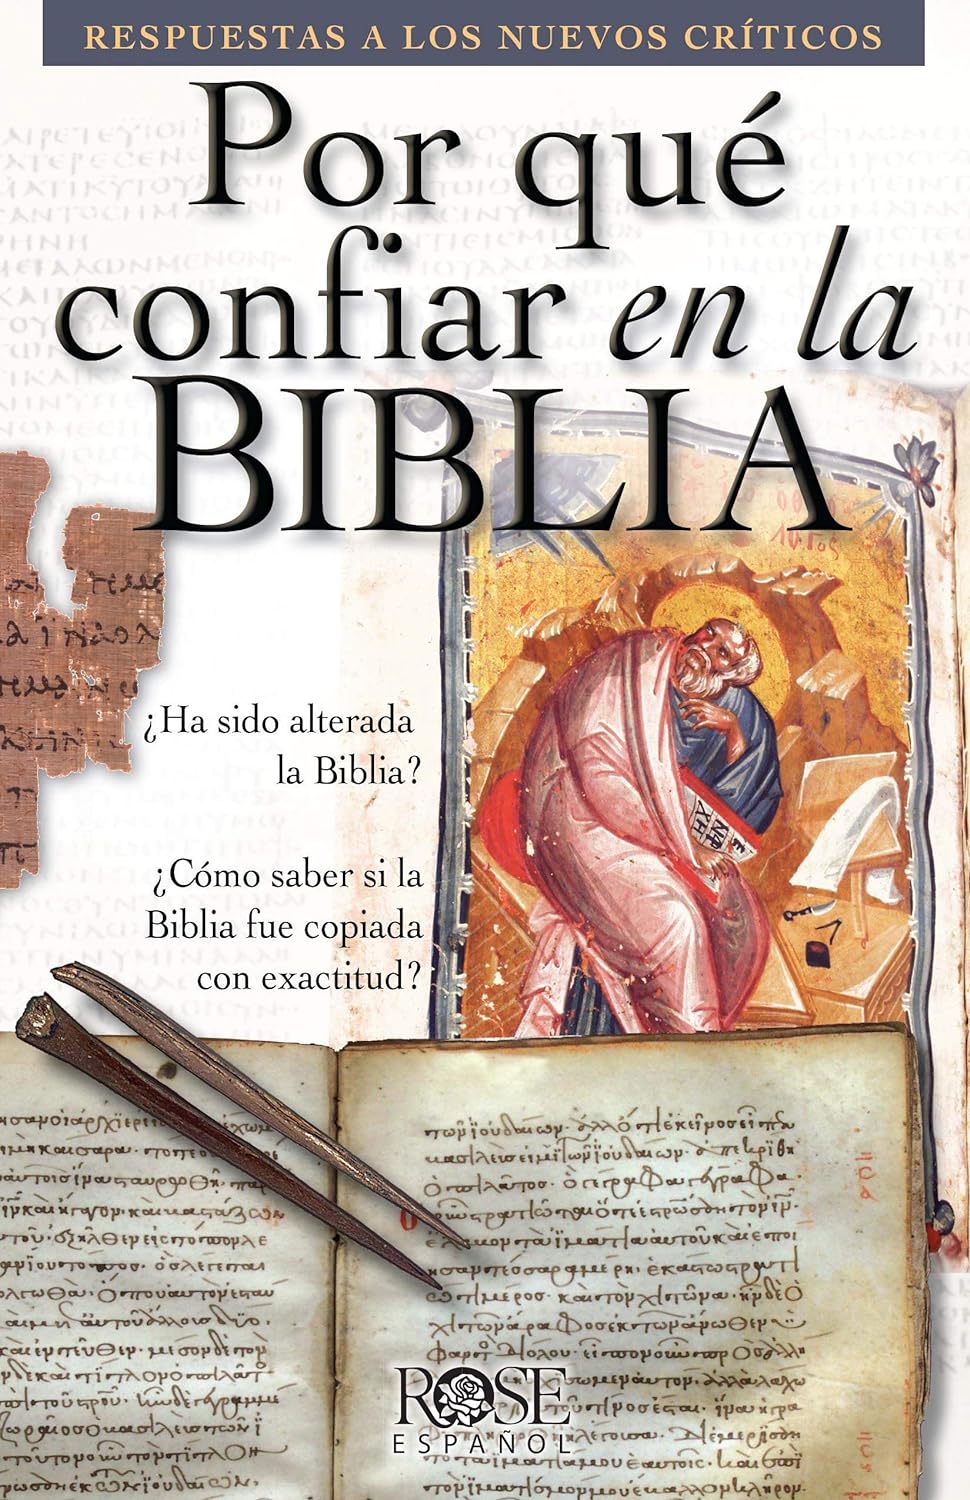 Por qué confiar en la Biblia: Respuestas a los nuevos críticos (Spanish Edition)